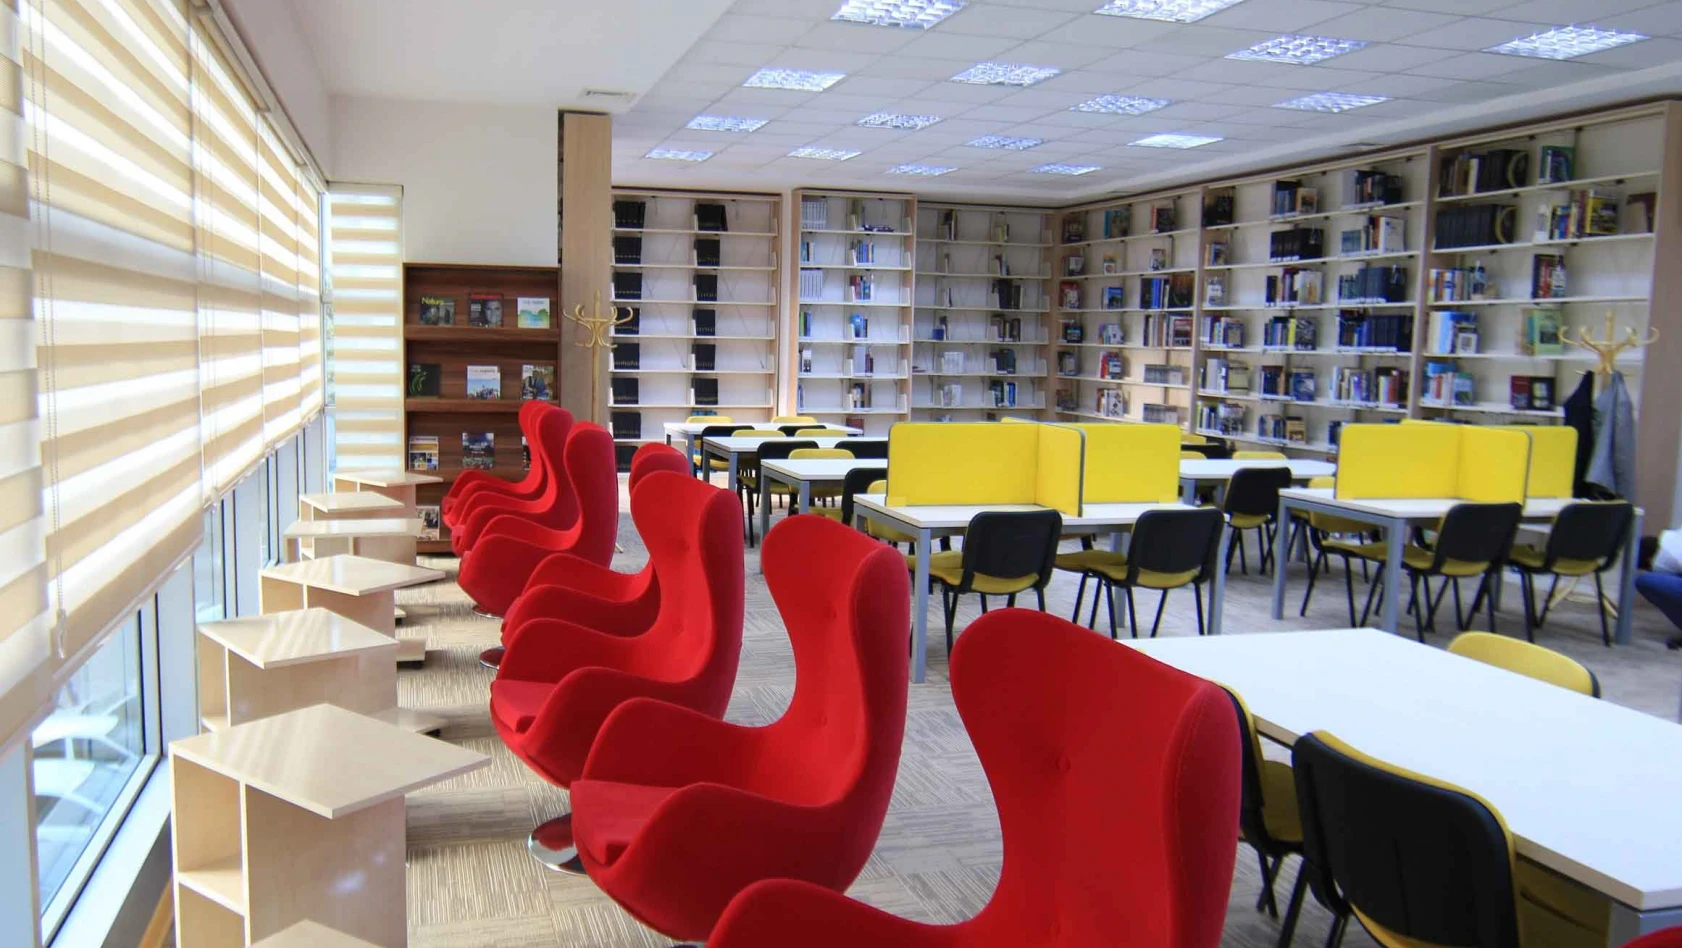 Büyükşehir'in kütüphane hizmeti takdir topluyor 